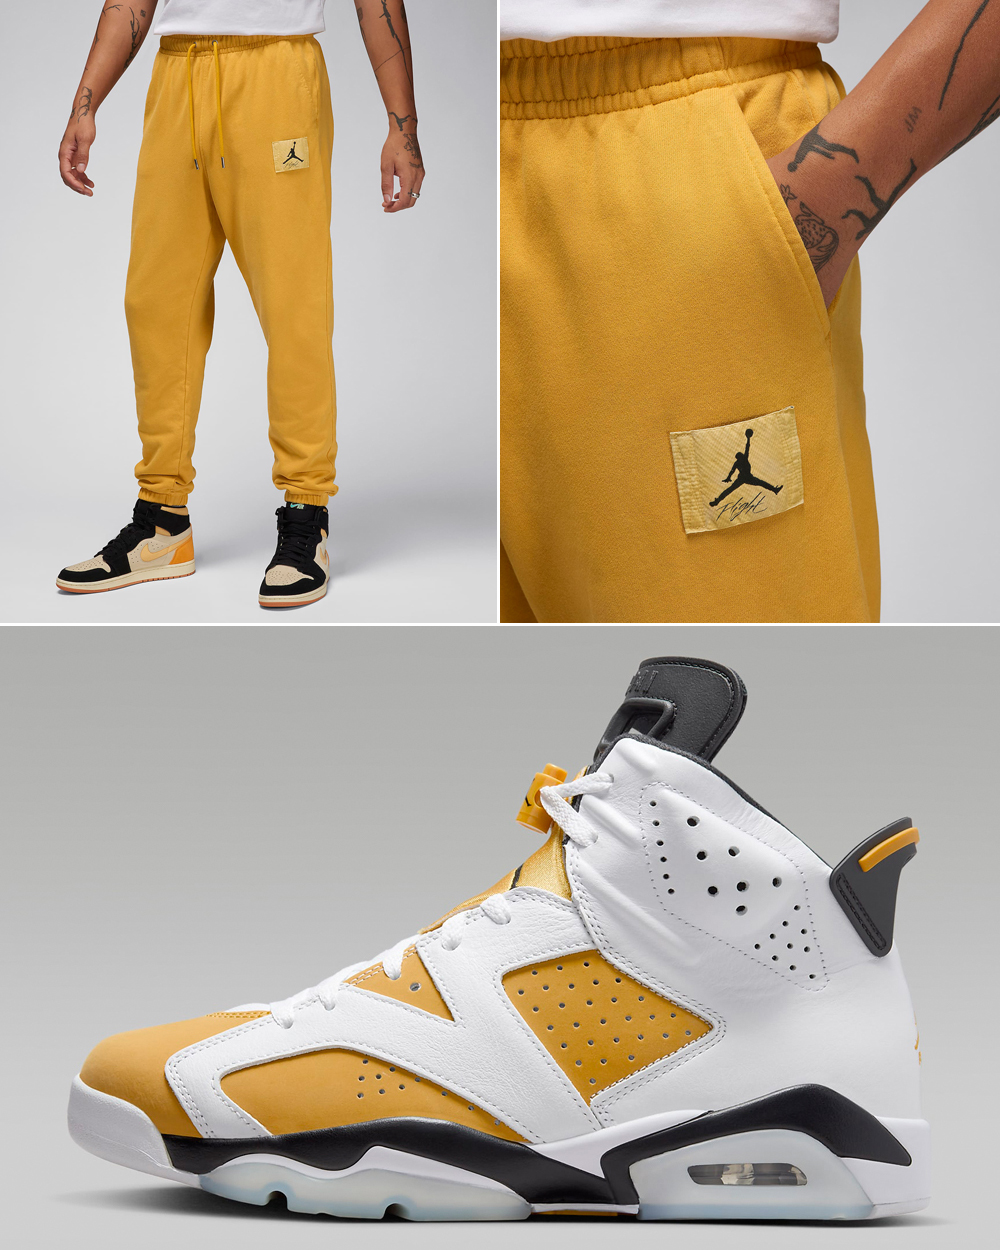 Air-Jordan-6-Yellow-Ochre-Matching-Pants